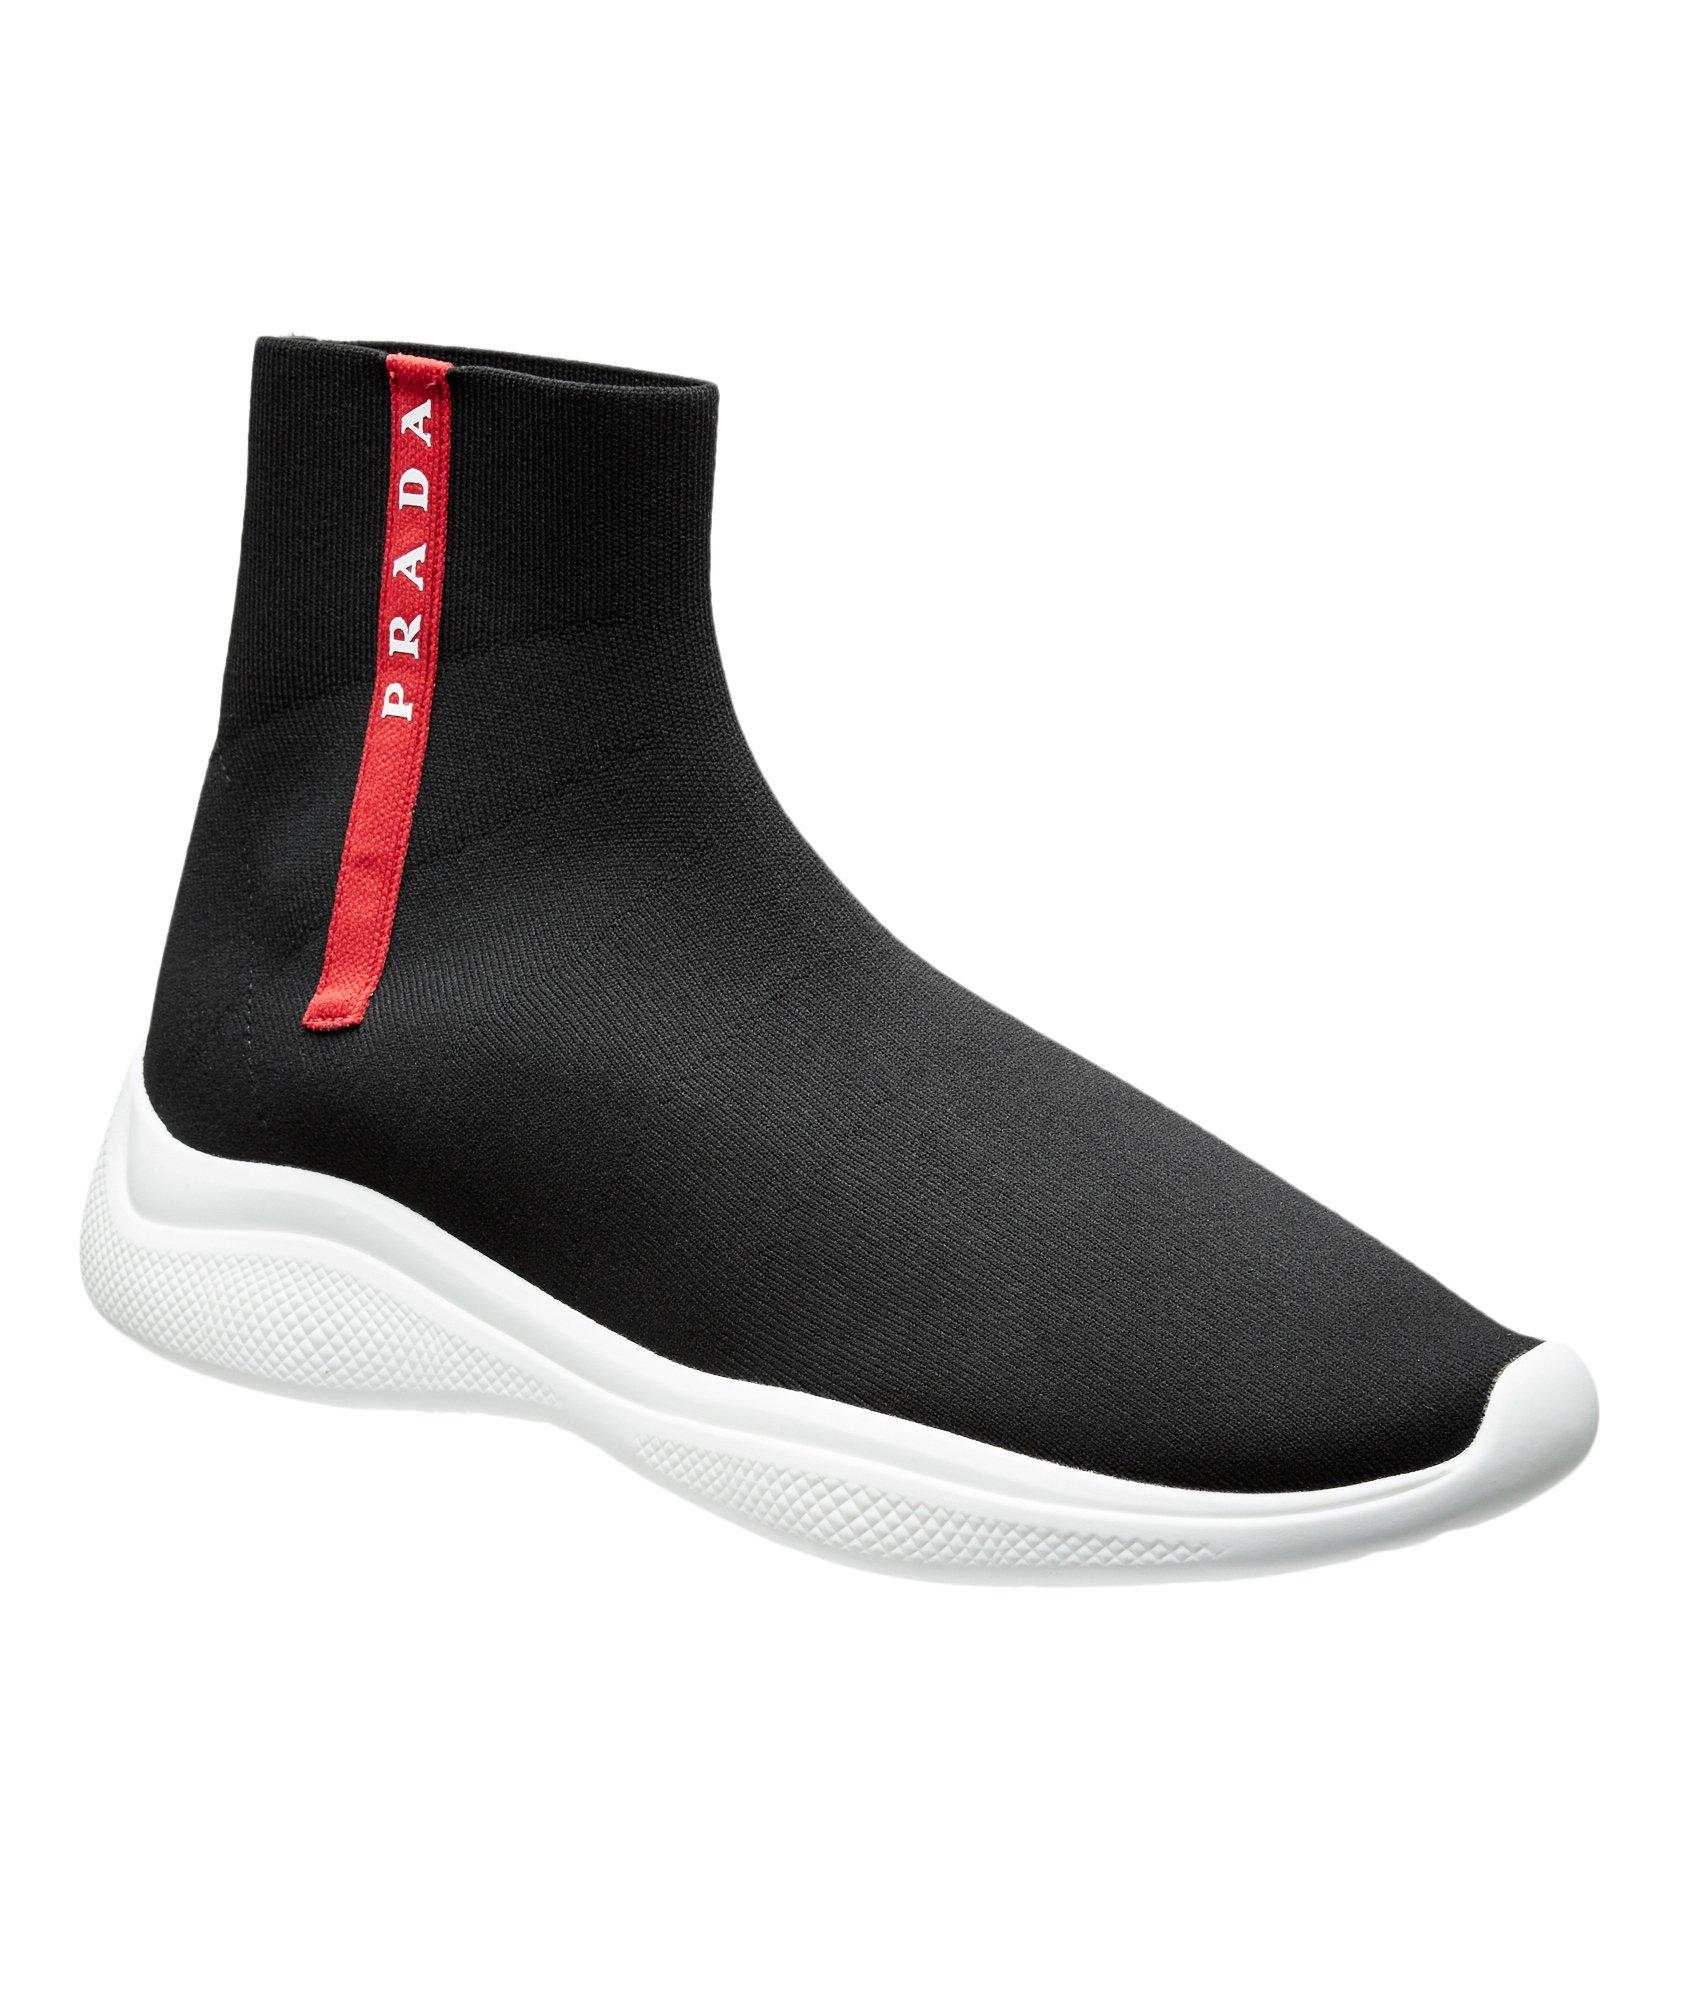 Linea Rossa Knit Sock Sneakers image 0